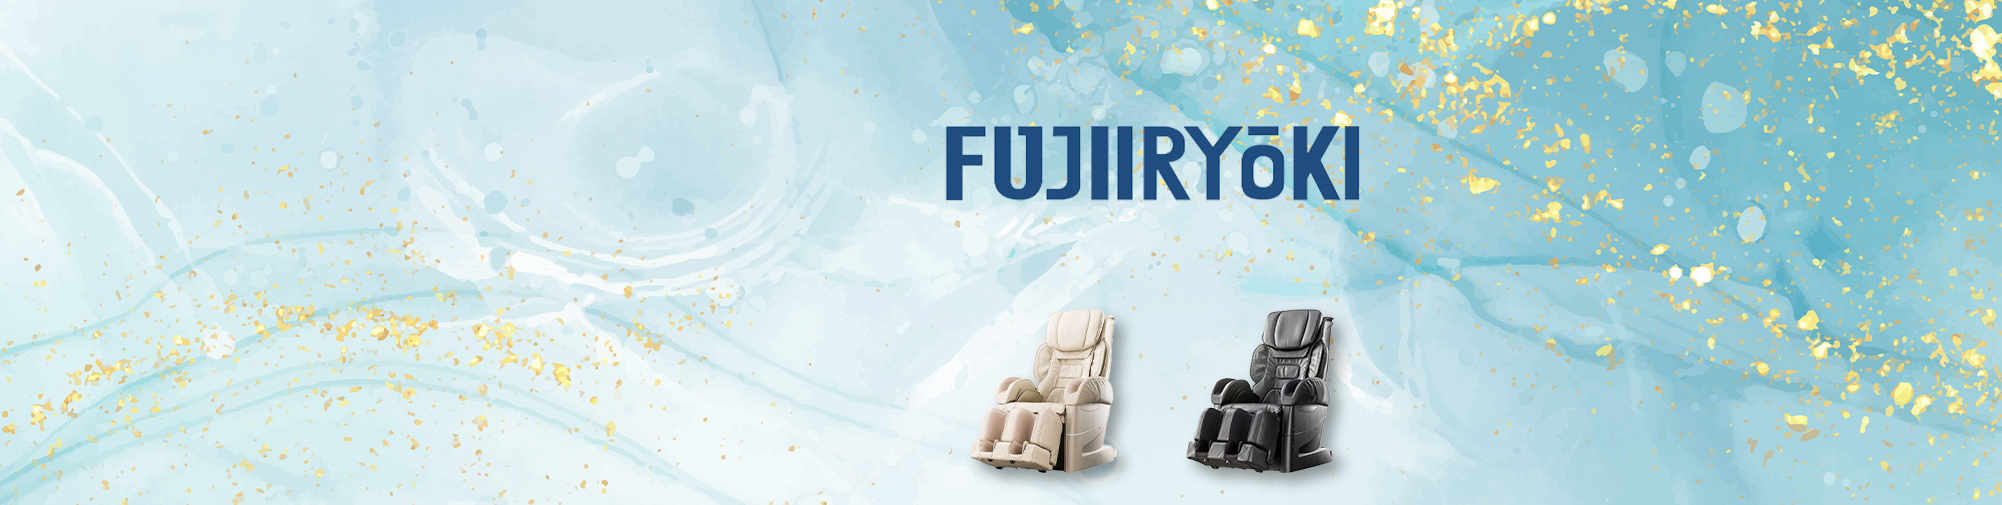 Fujiiryoki - تاریخچه ماساژ صندلی | ماساژ صندلی جهان